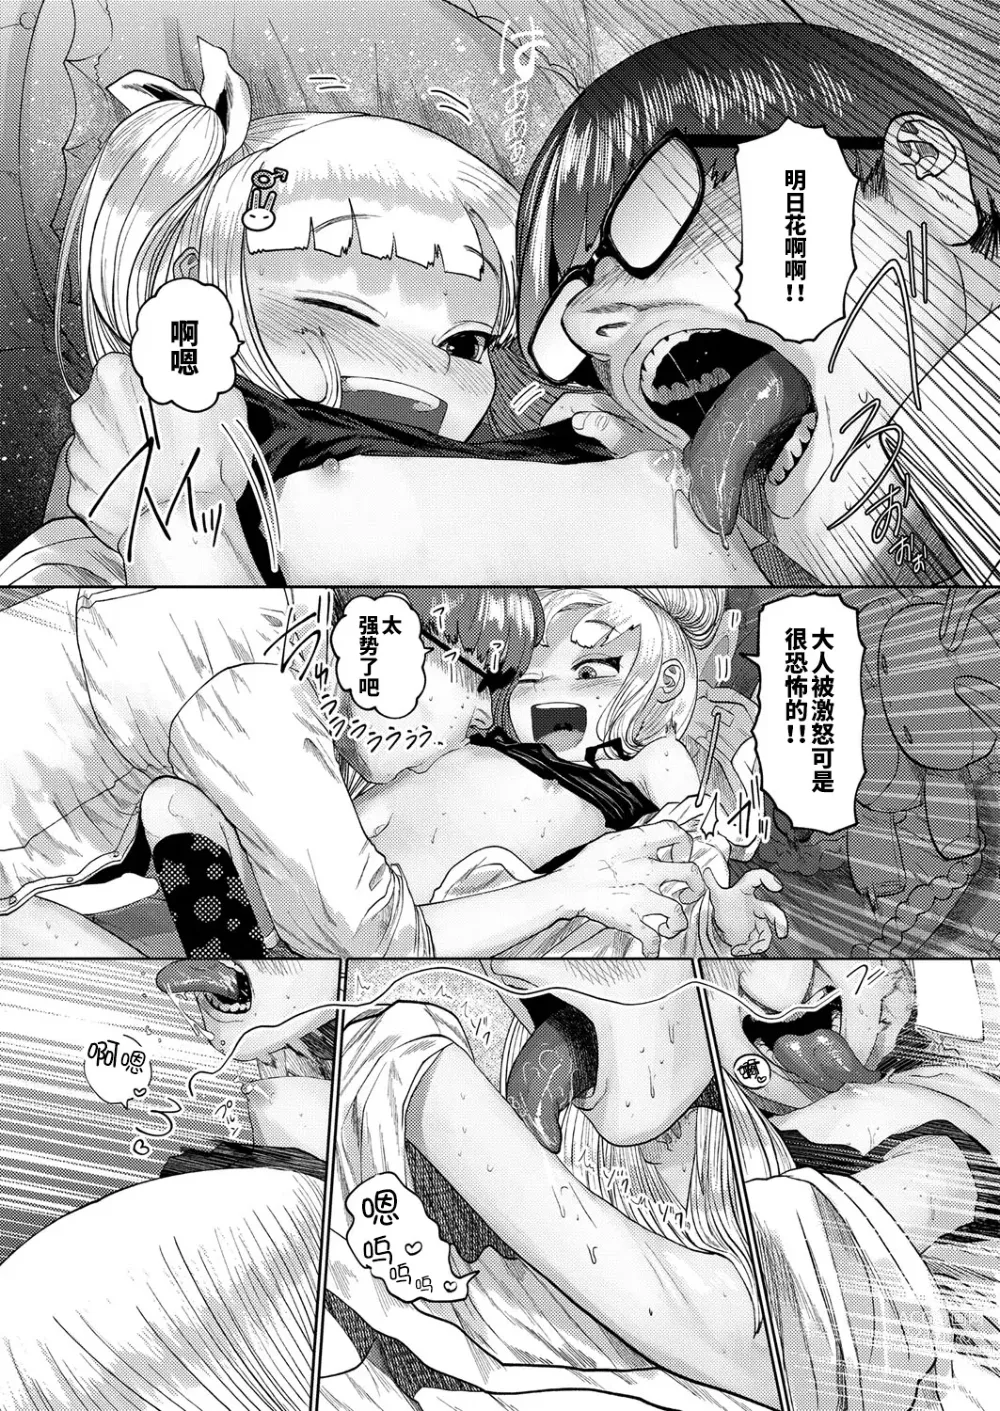 Page 14 of manga ねーうしとらうー! #1-5